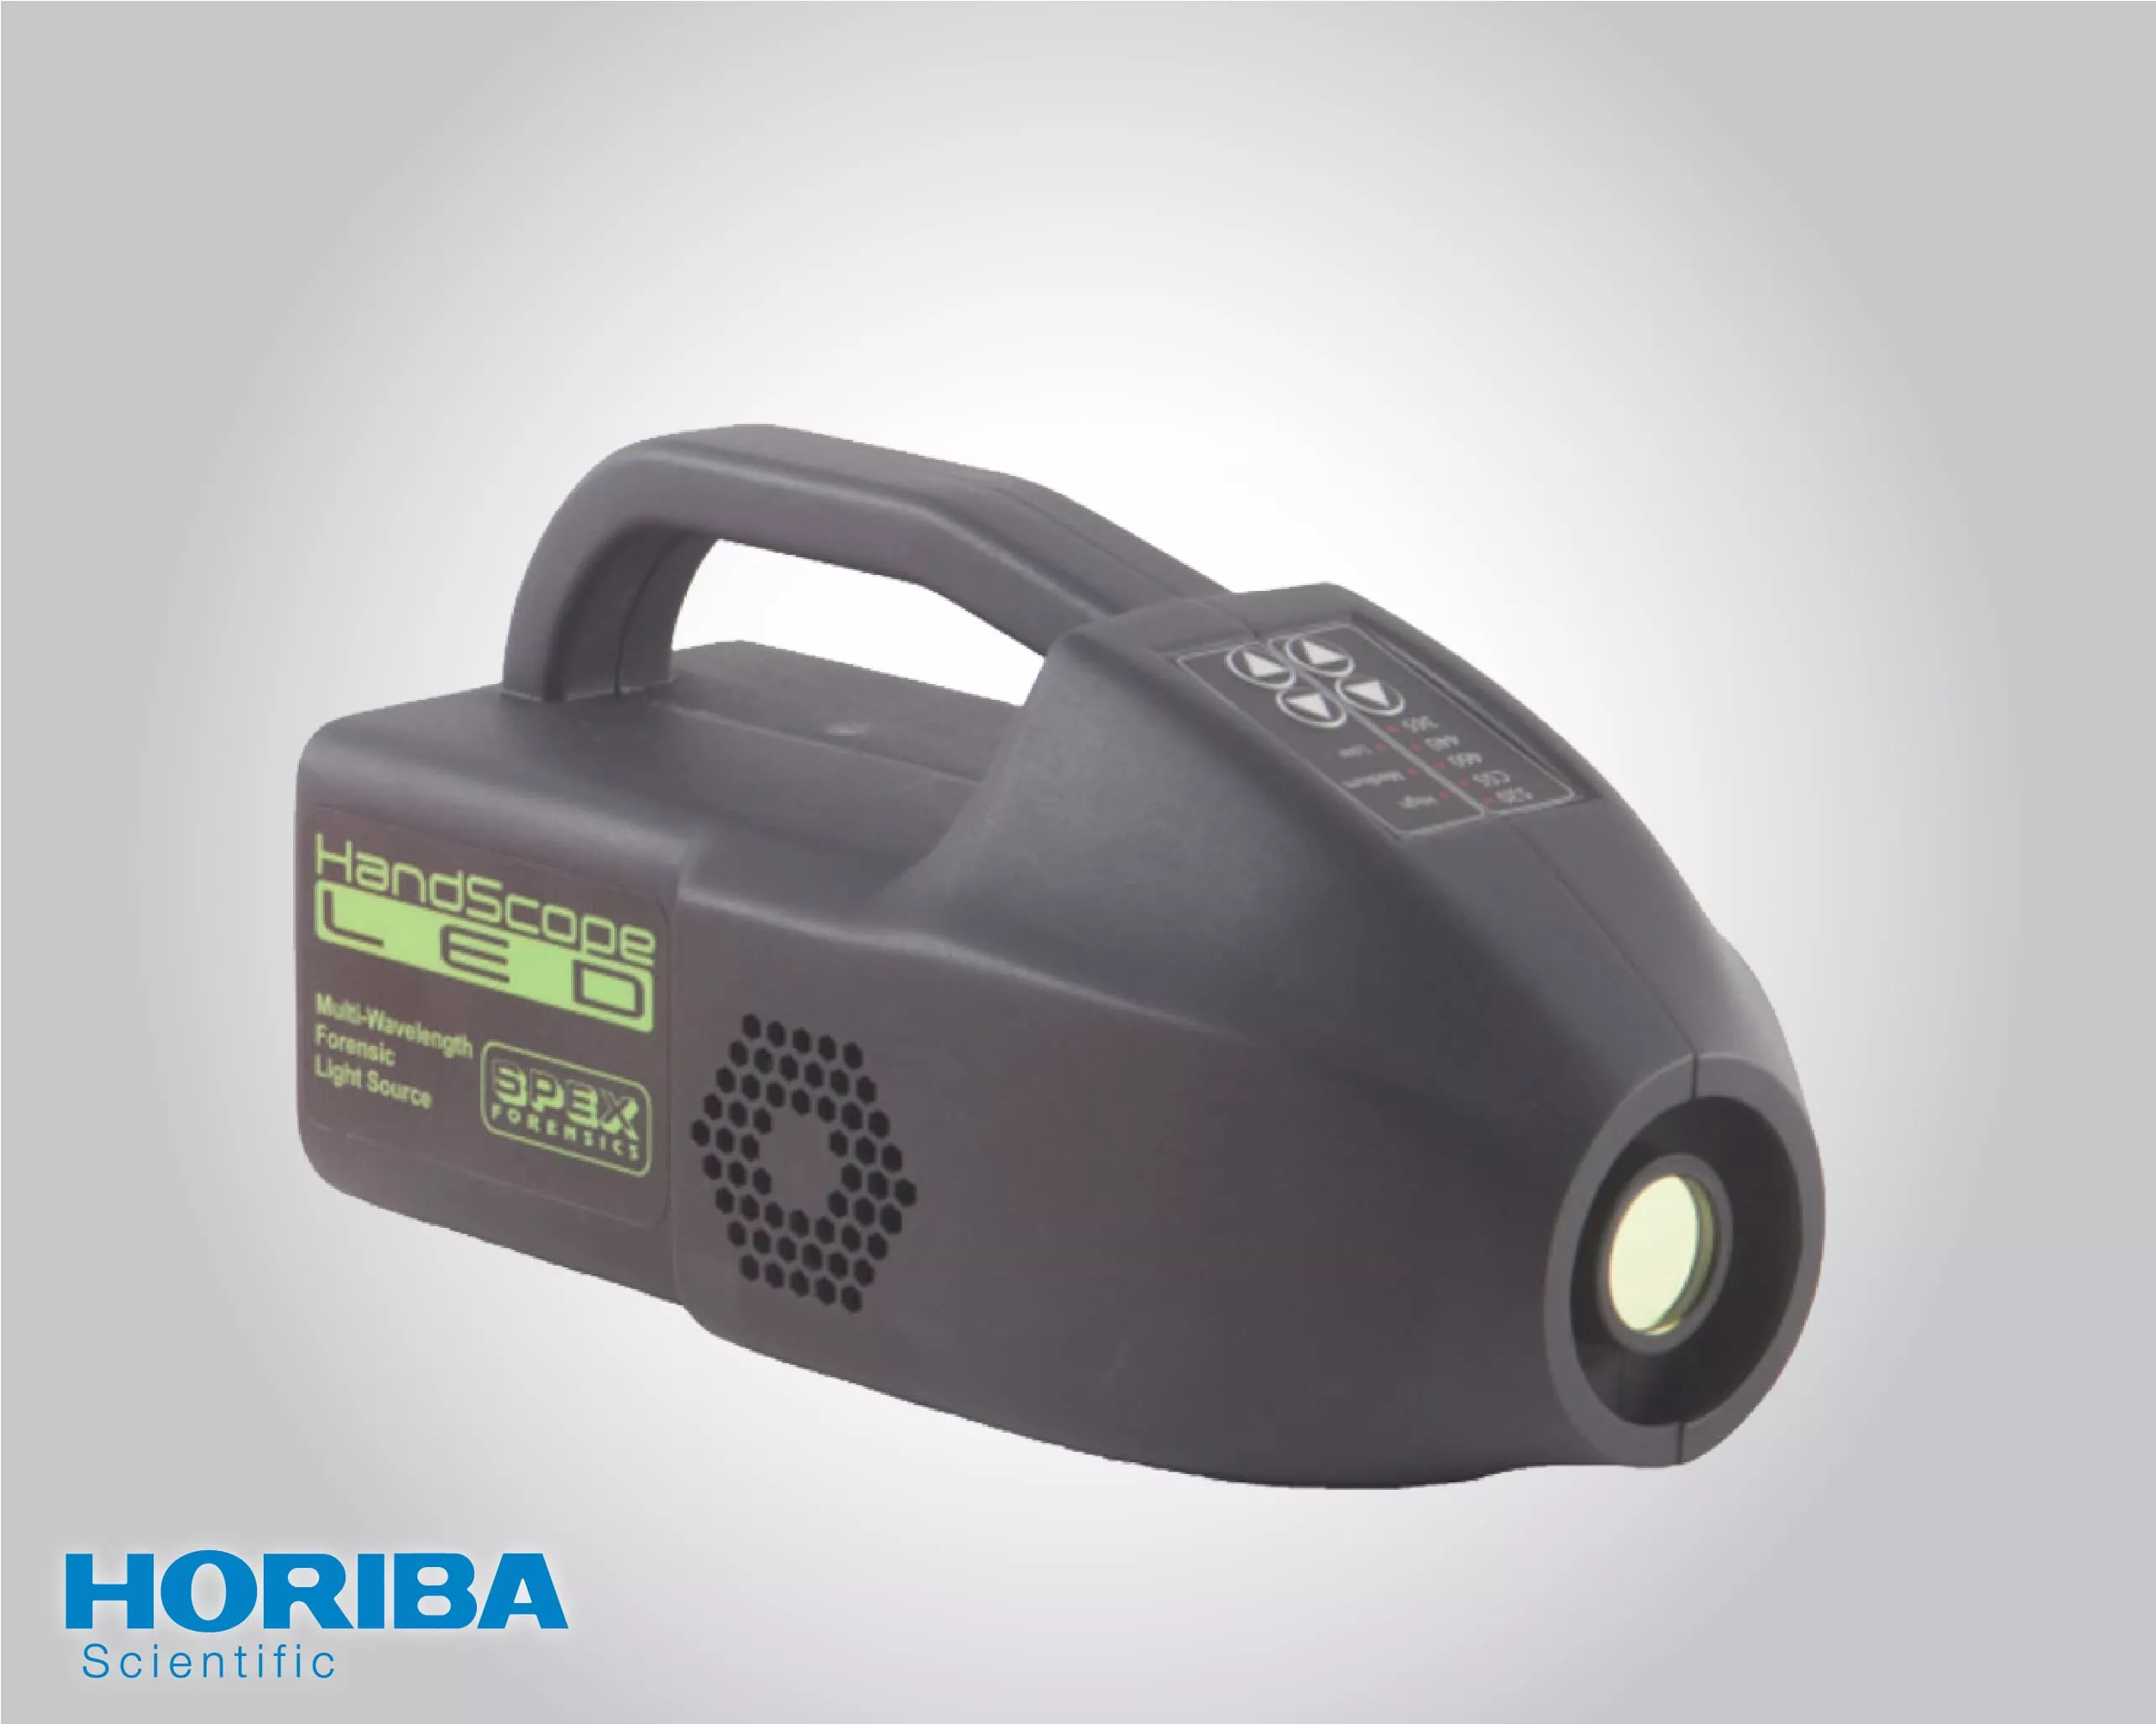 Horiba Light Source for Forensics